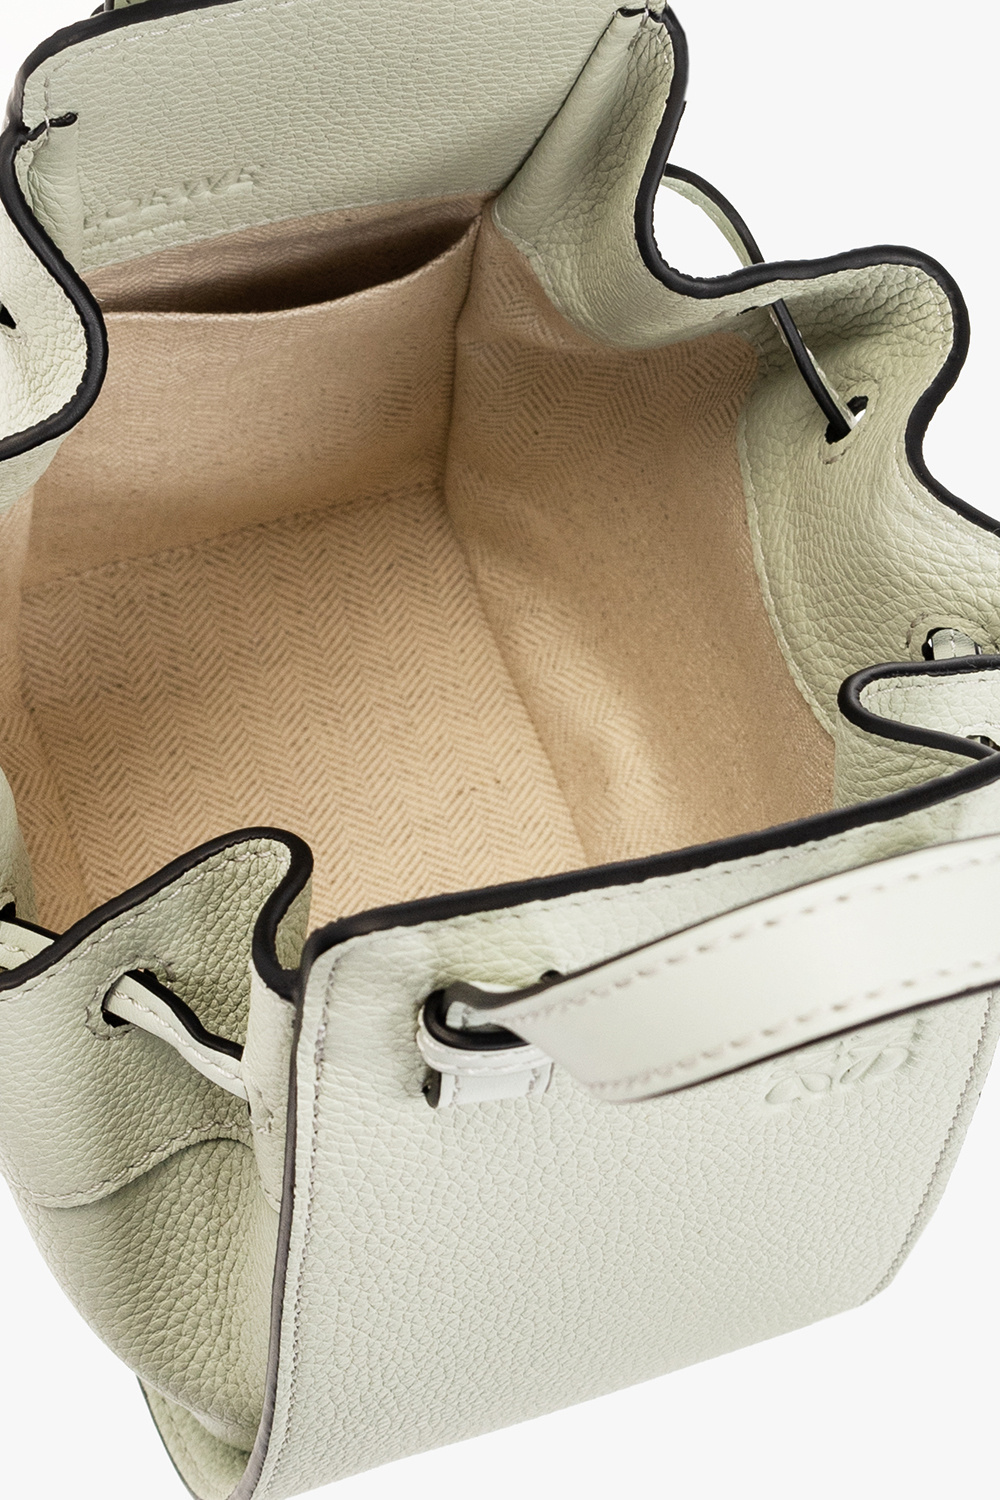 Green 'Hammock Mini' shoulder bag Loewe - IetpShops Italy - Vendre un sac  Loewe